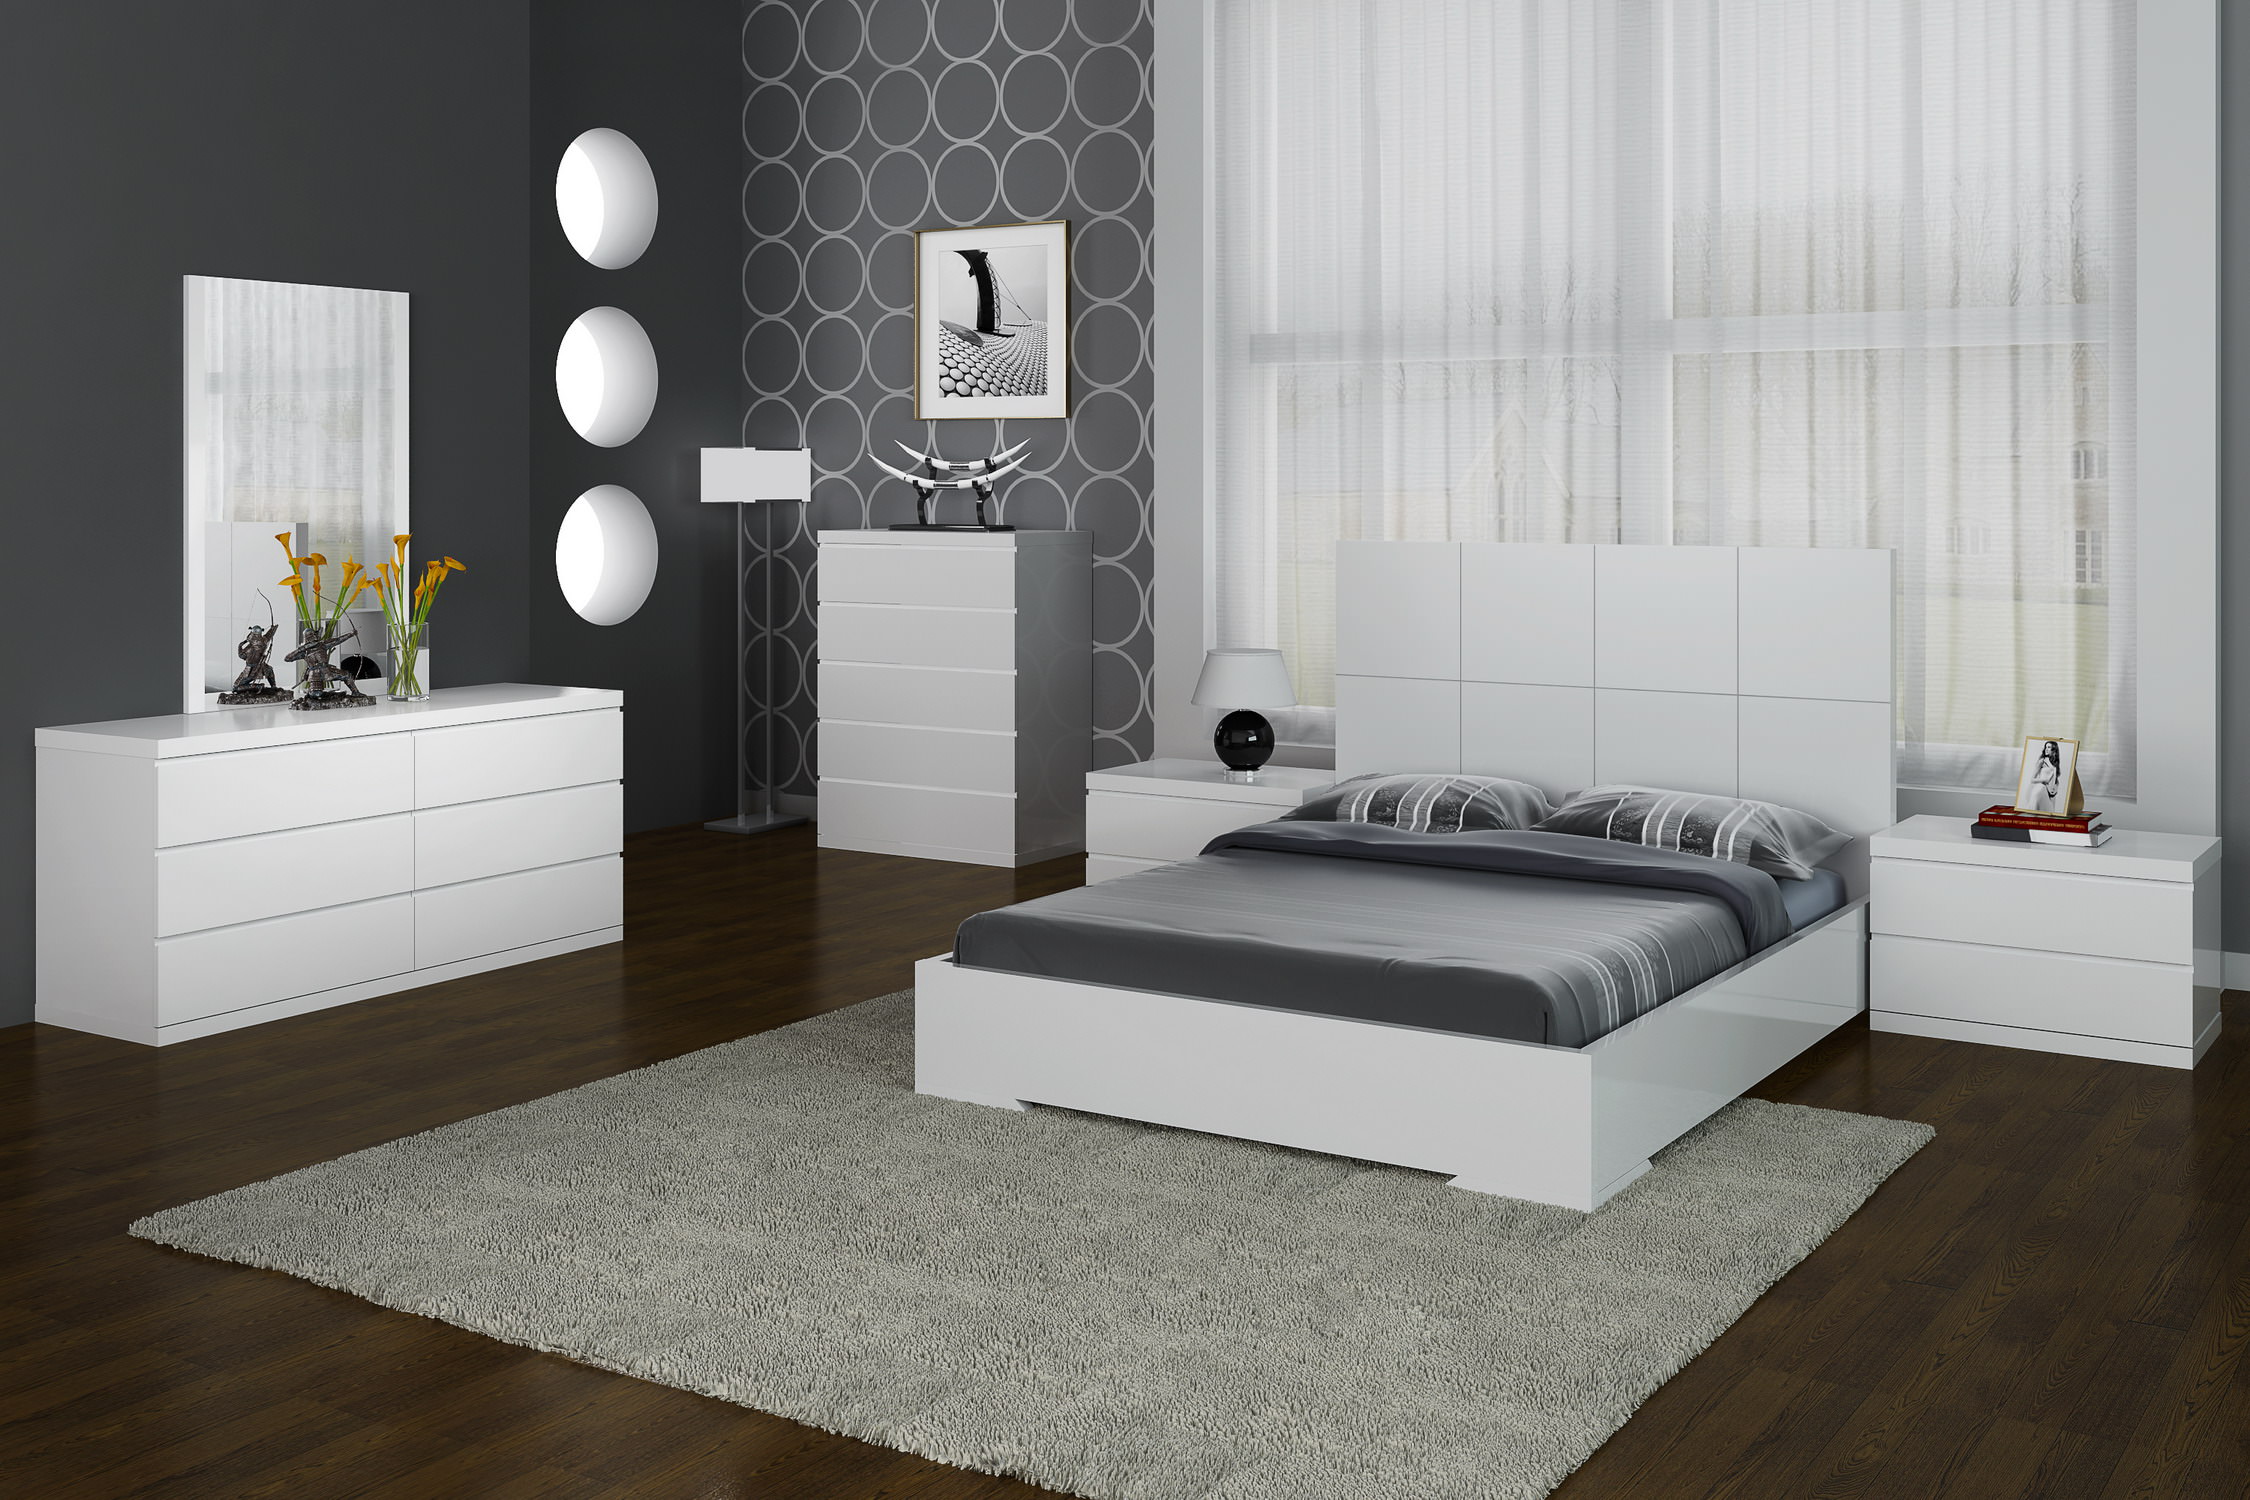 Elite Modern Bedroom Set wit Designer Headboard - Click Image to Close